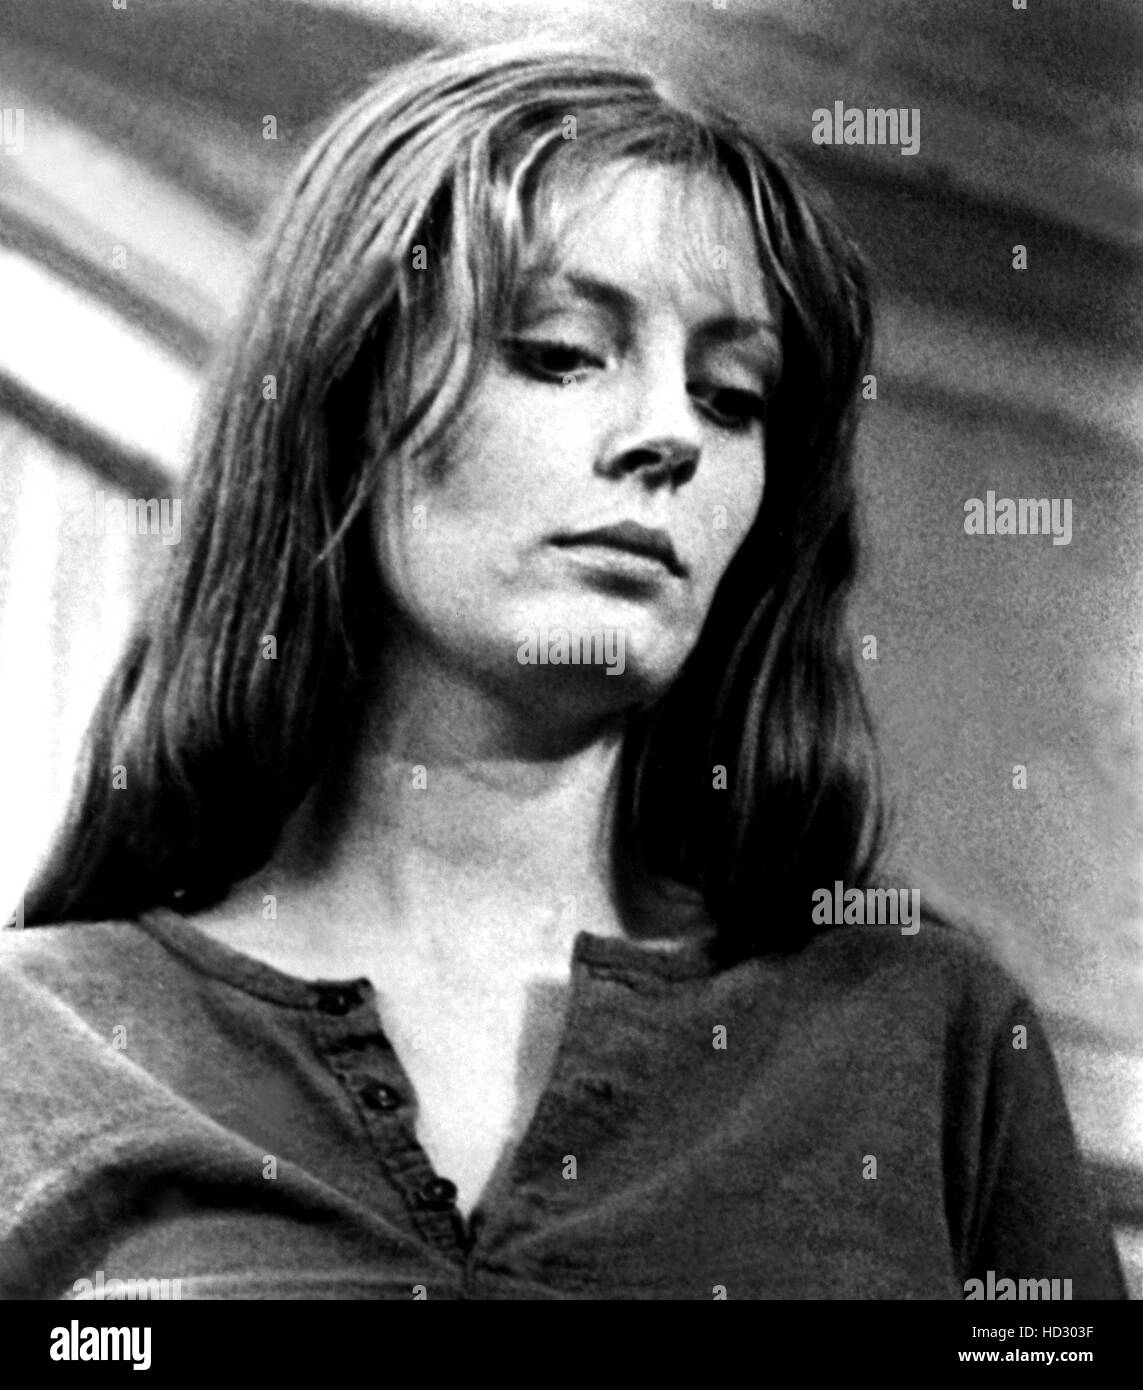 JOE, Susan Sarandon, 1970 Stock Photo - Alamy